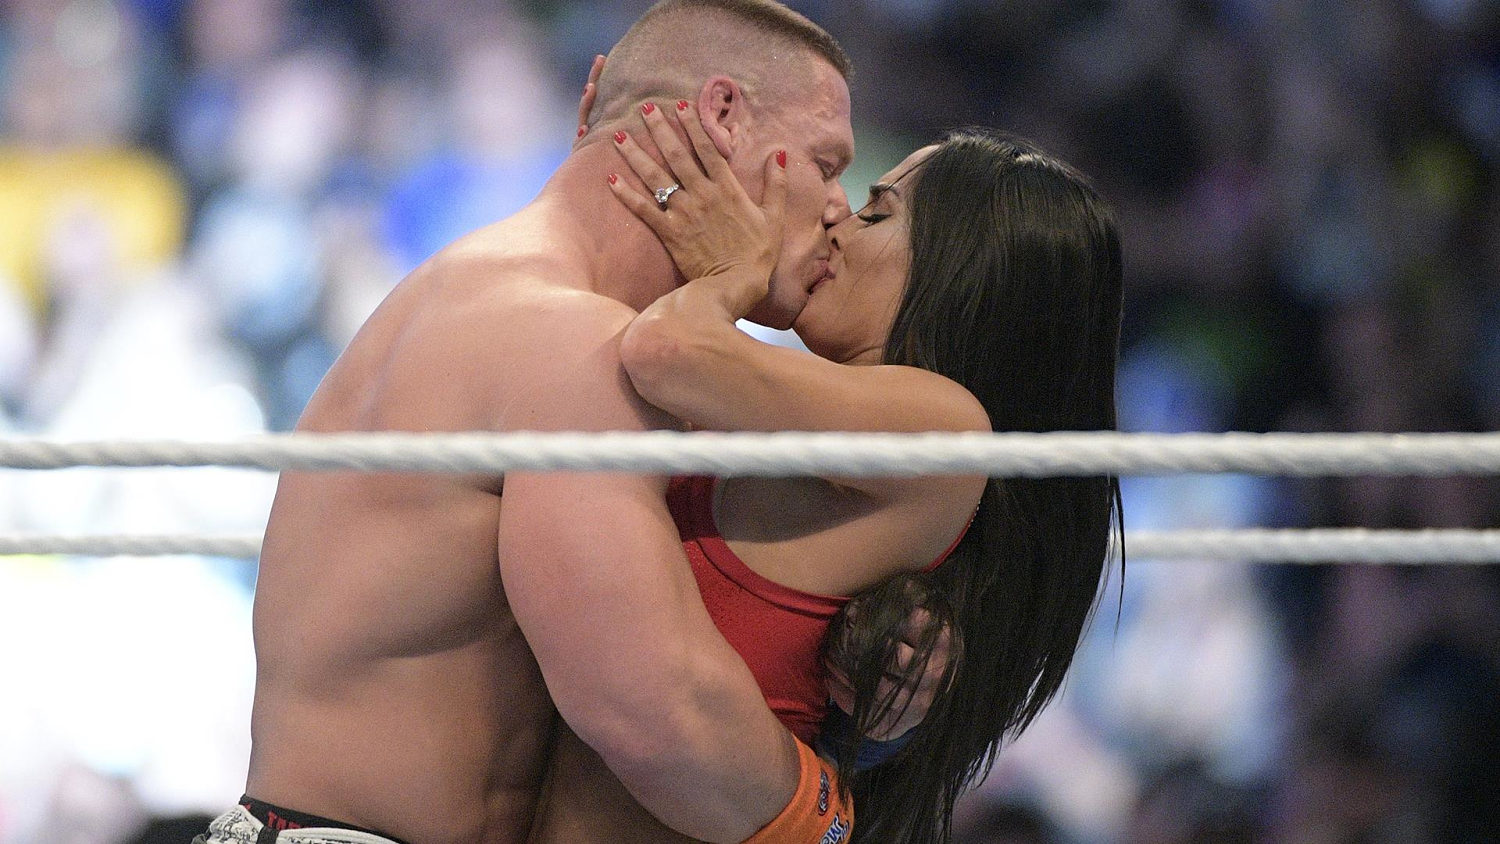 See John Cenas sweet proposal to Nikki Bella during WrestleMania pic